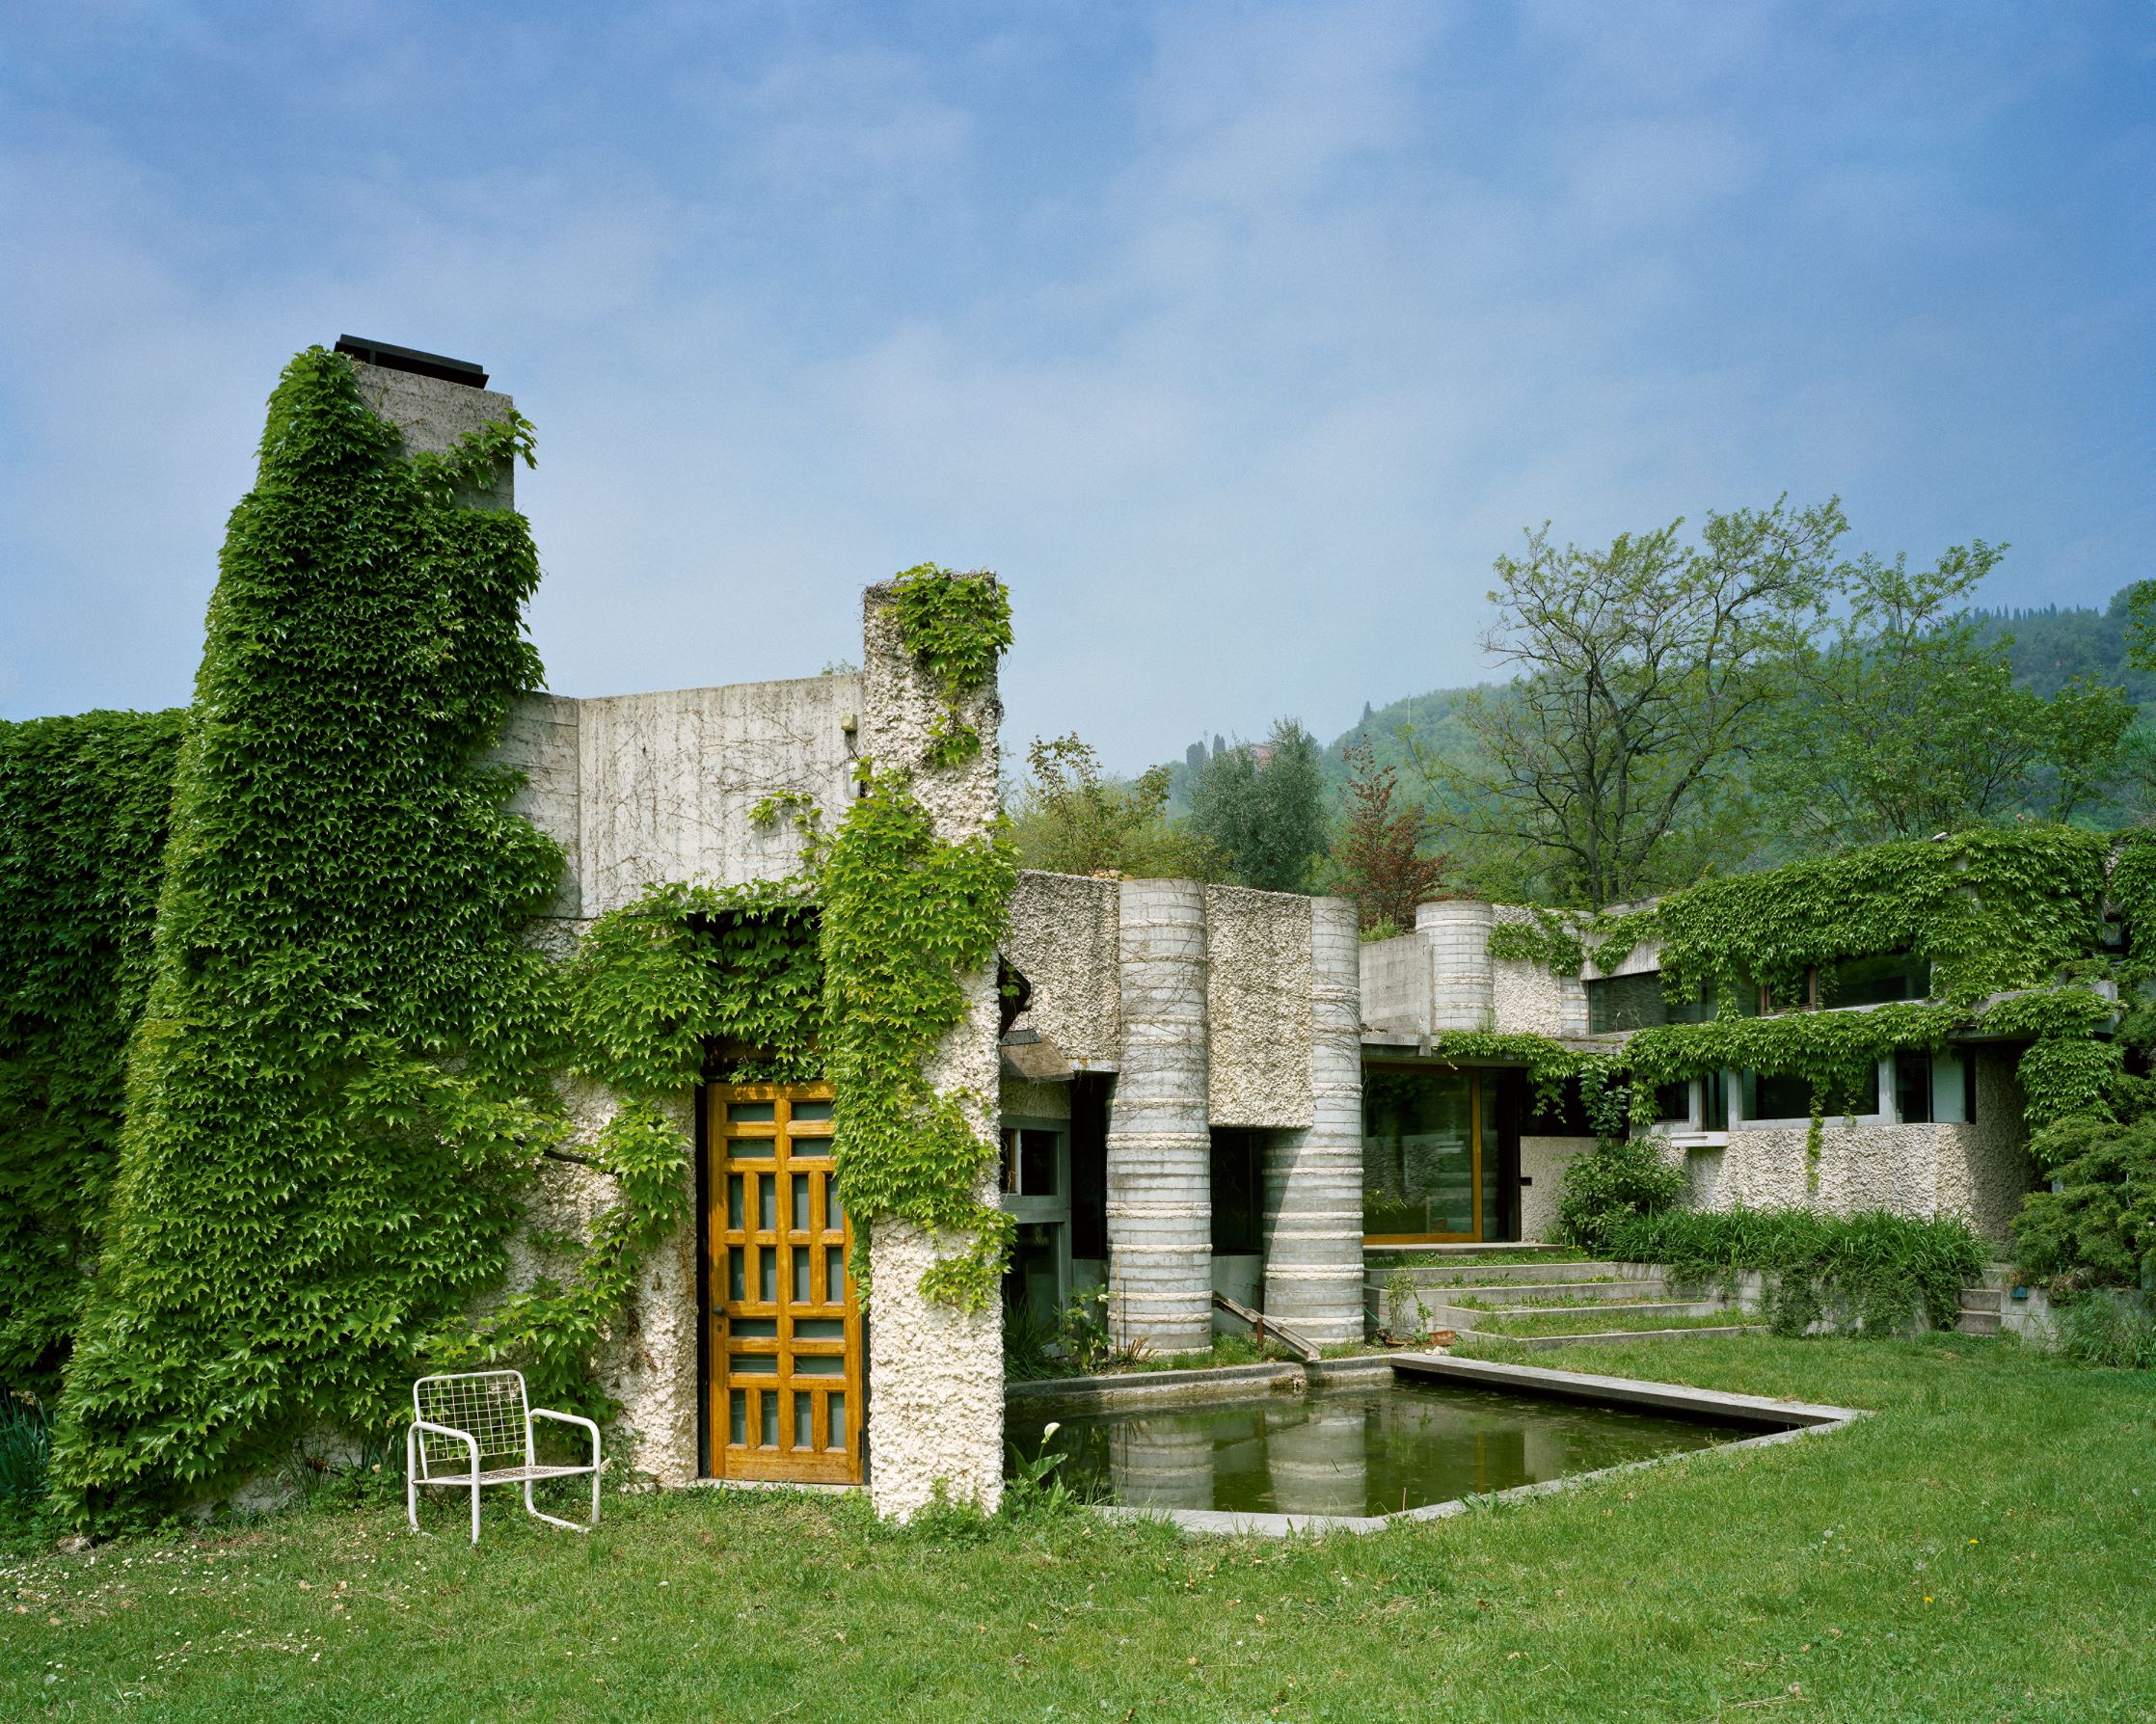 Villa Ottolenghi, 1978, Verona, Italy, Carlo Scarpa. Photo by Åke Eson Lindman